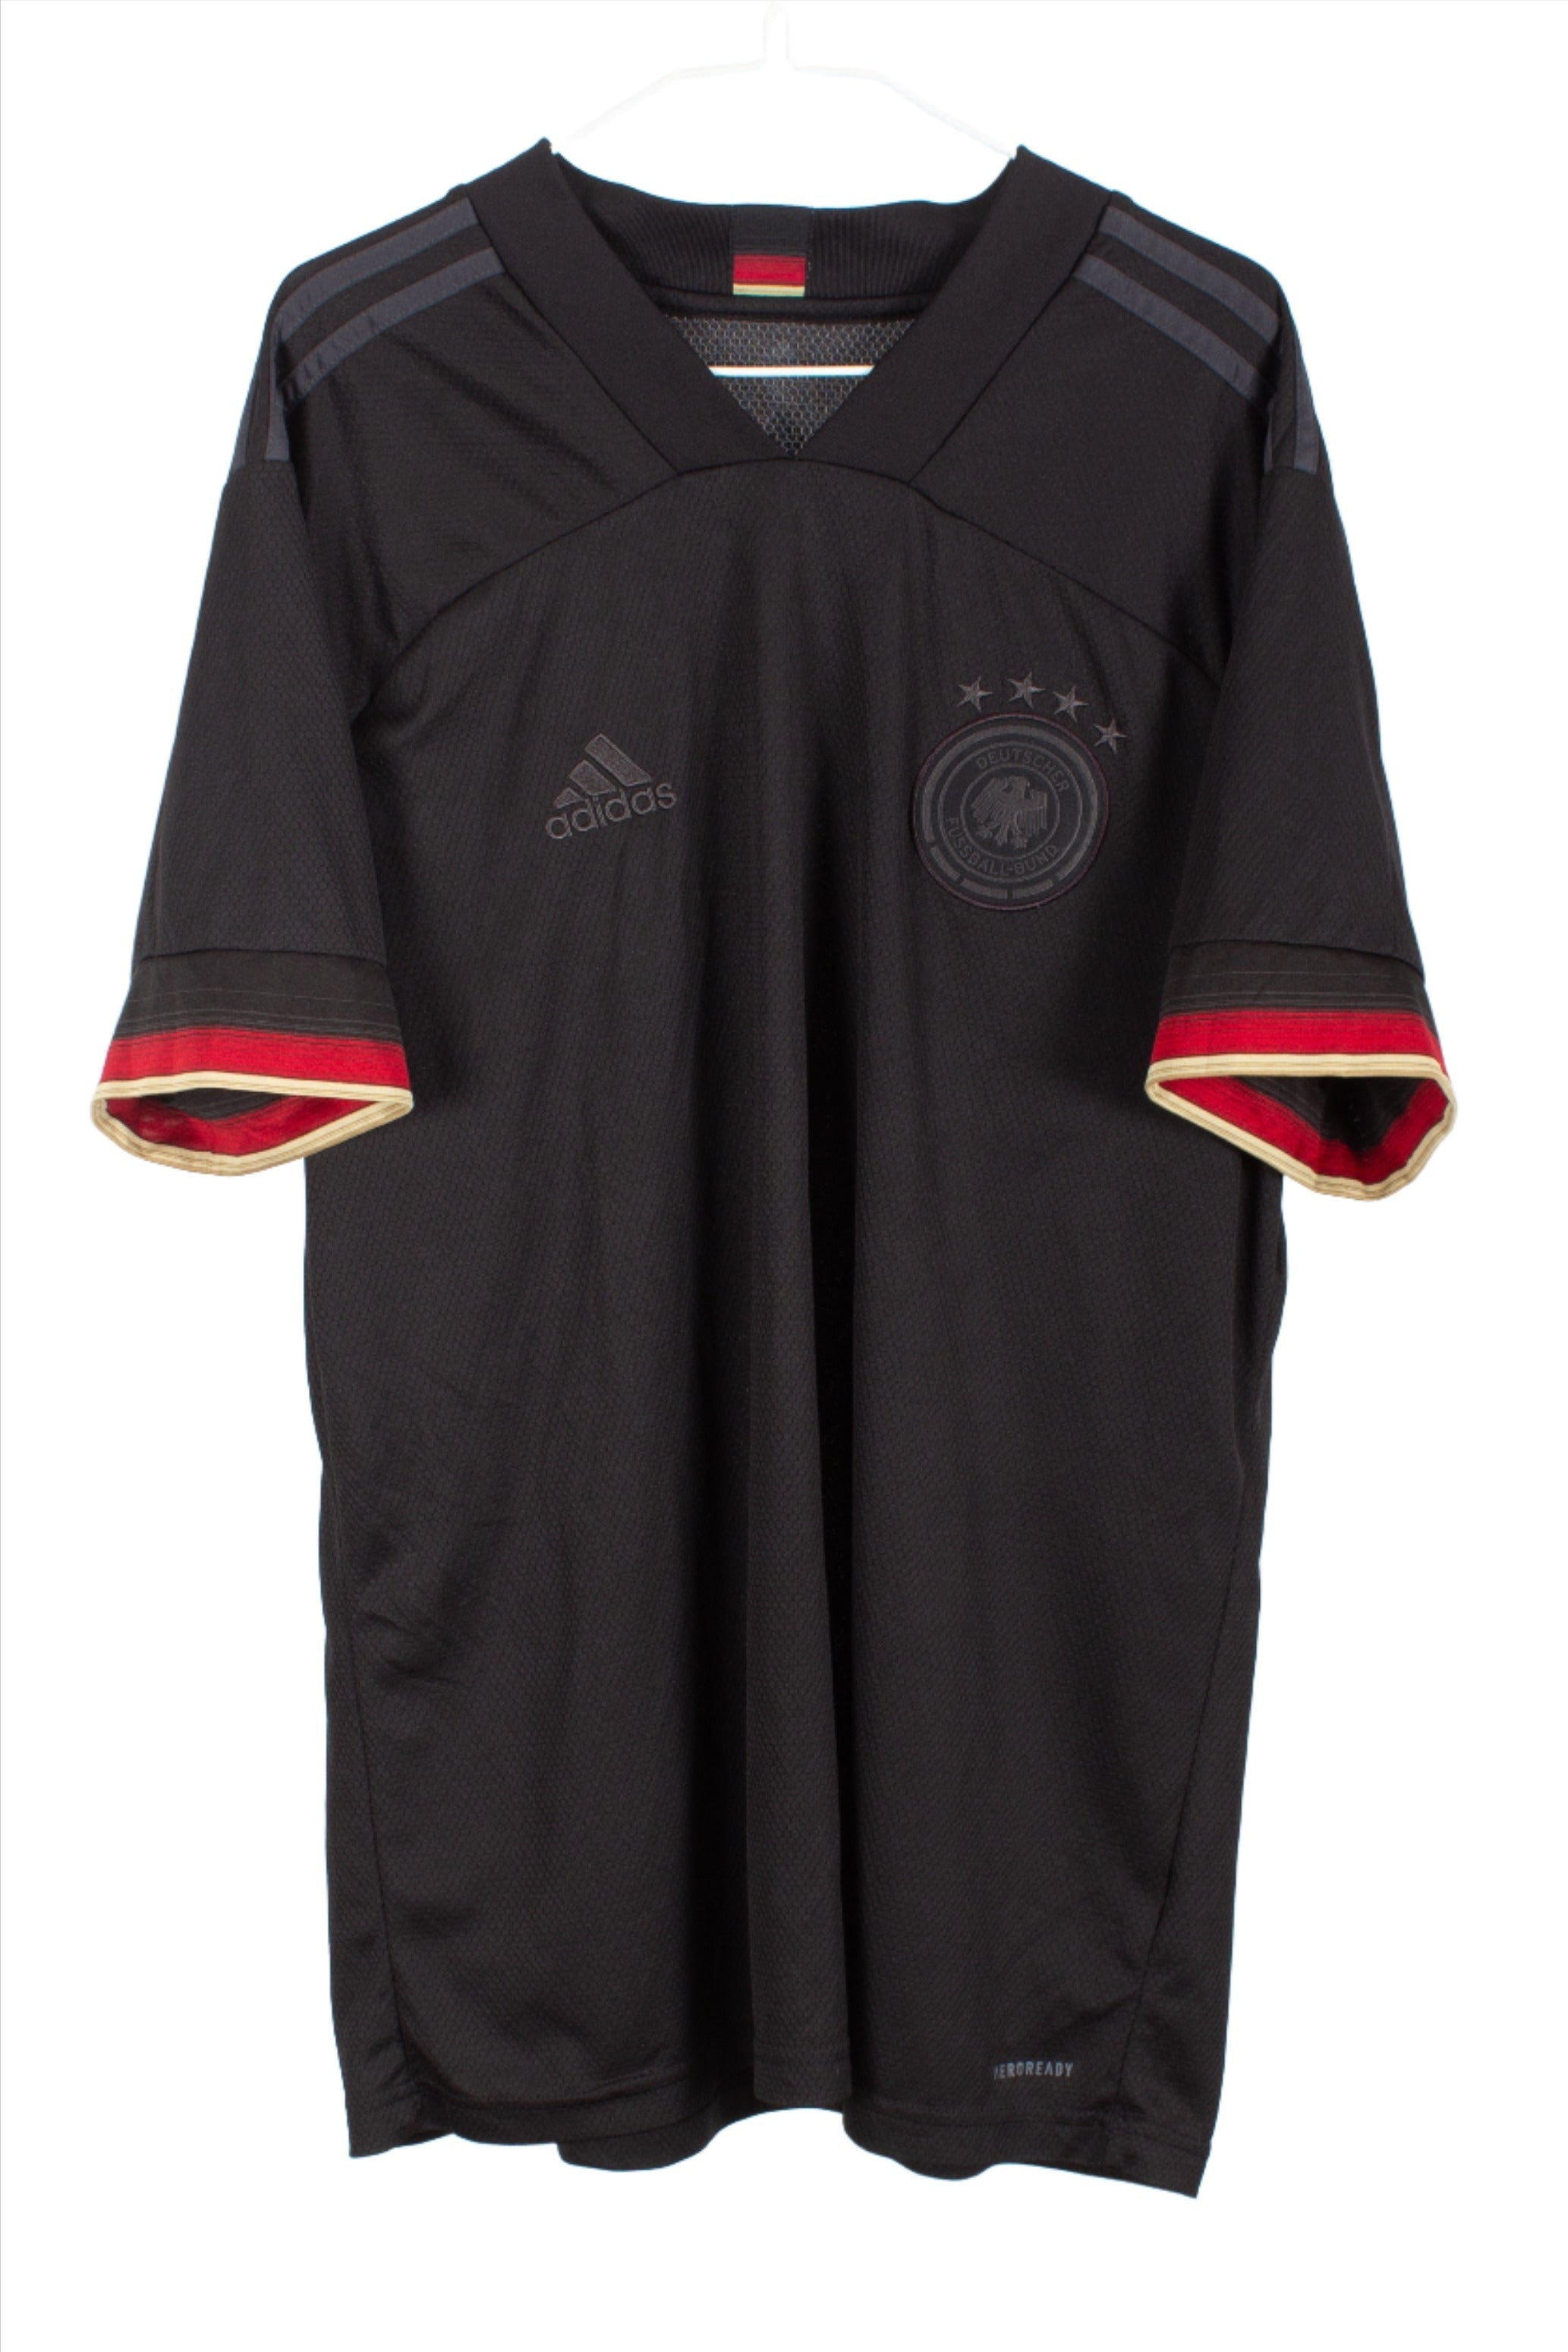 Germany 2020/21 Away Shirt (XL)